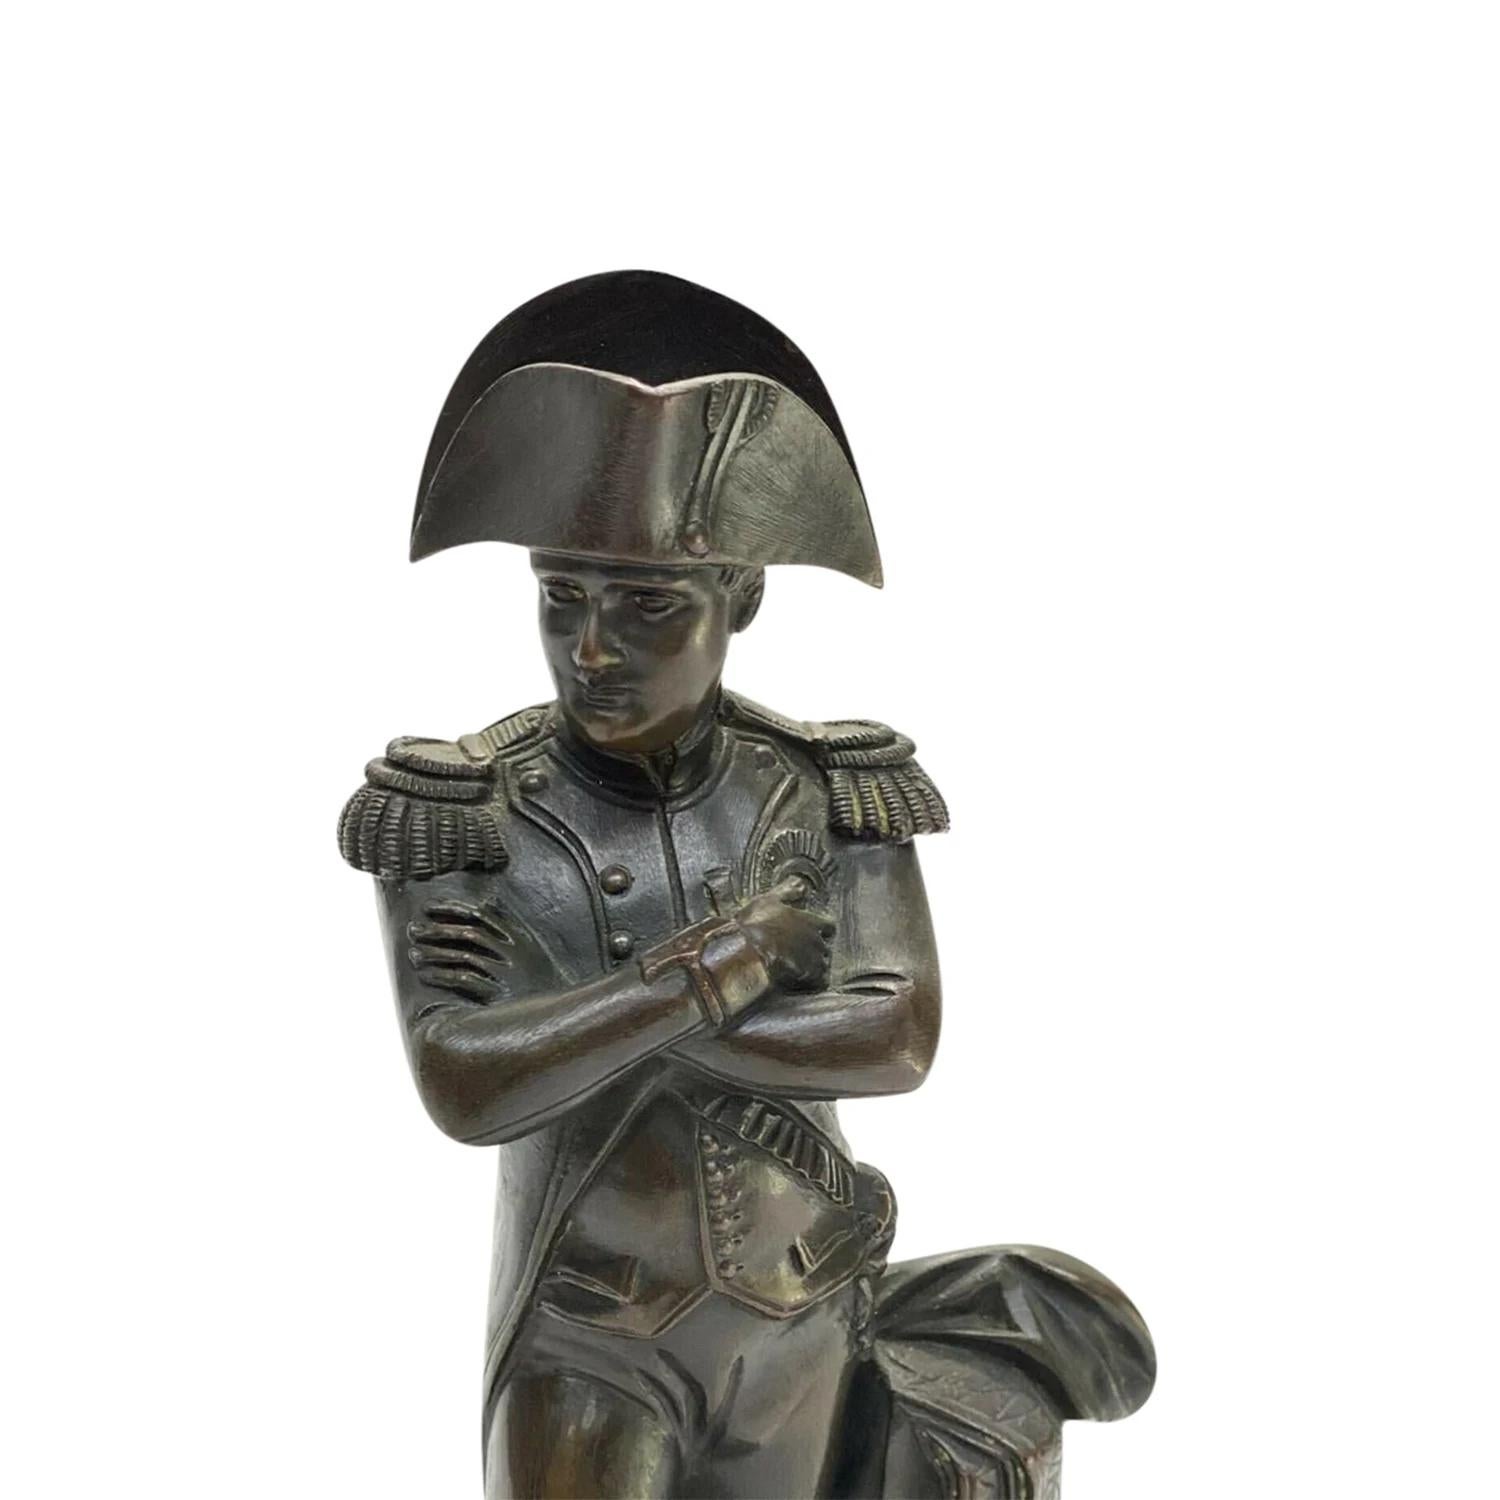 Busto francés antiguo negro de Napoleón Bonaparte del siglo XIX, de bronce patinado hecho a mano, en buen estado. La pequeña escultura representa a Napoleón con su atuendo militar y en posición de mando. Esta detallada pieza de decoración parisina